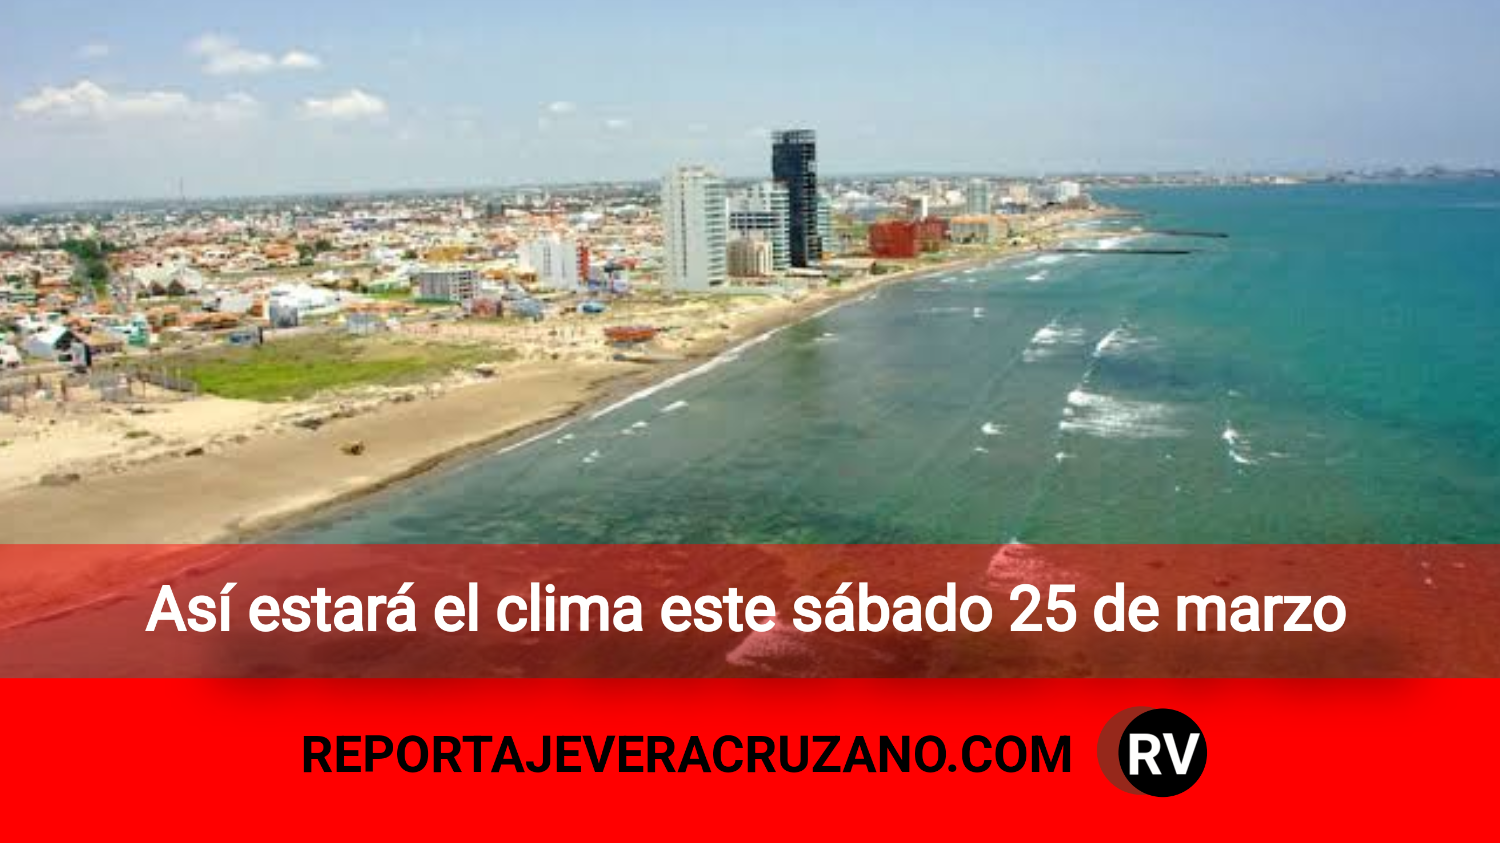 Así estará el clima este sábado 25 de marzo Reportaje Veracruzano